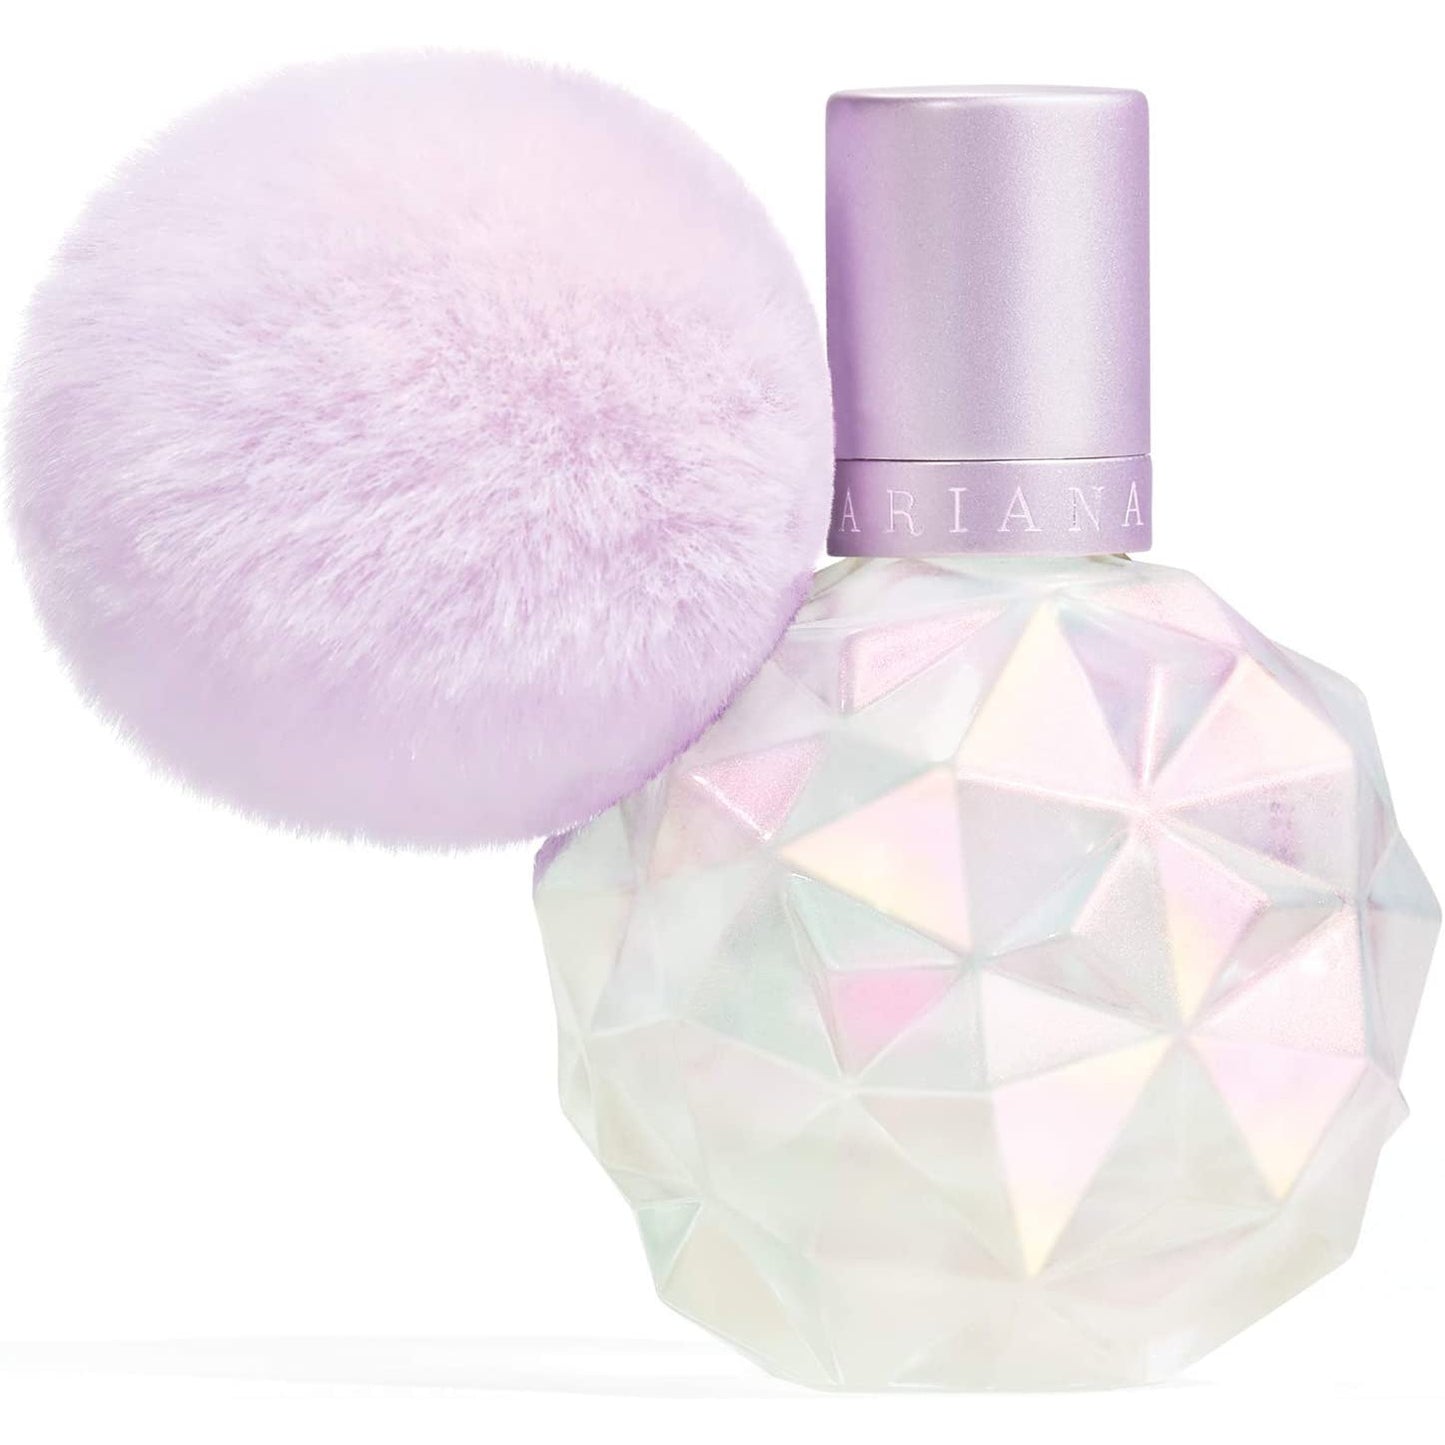 Ariana Grande Moonlight Perfume Para Mujer 100ml Eau de Parfum